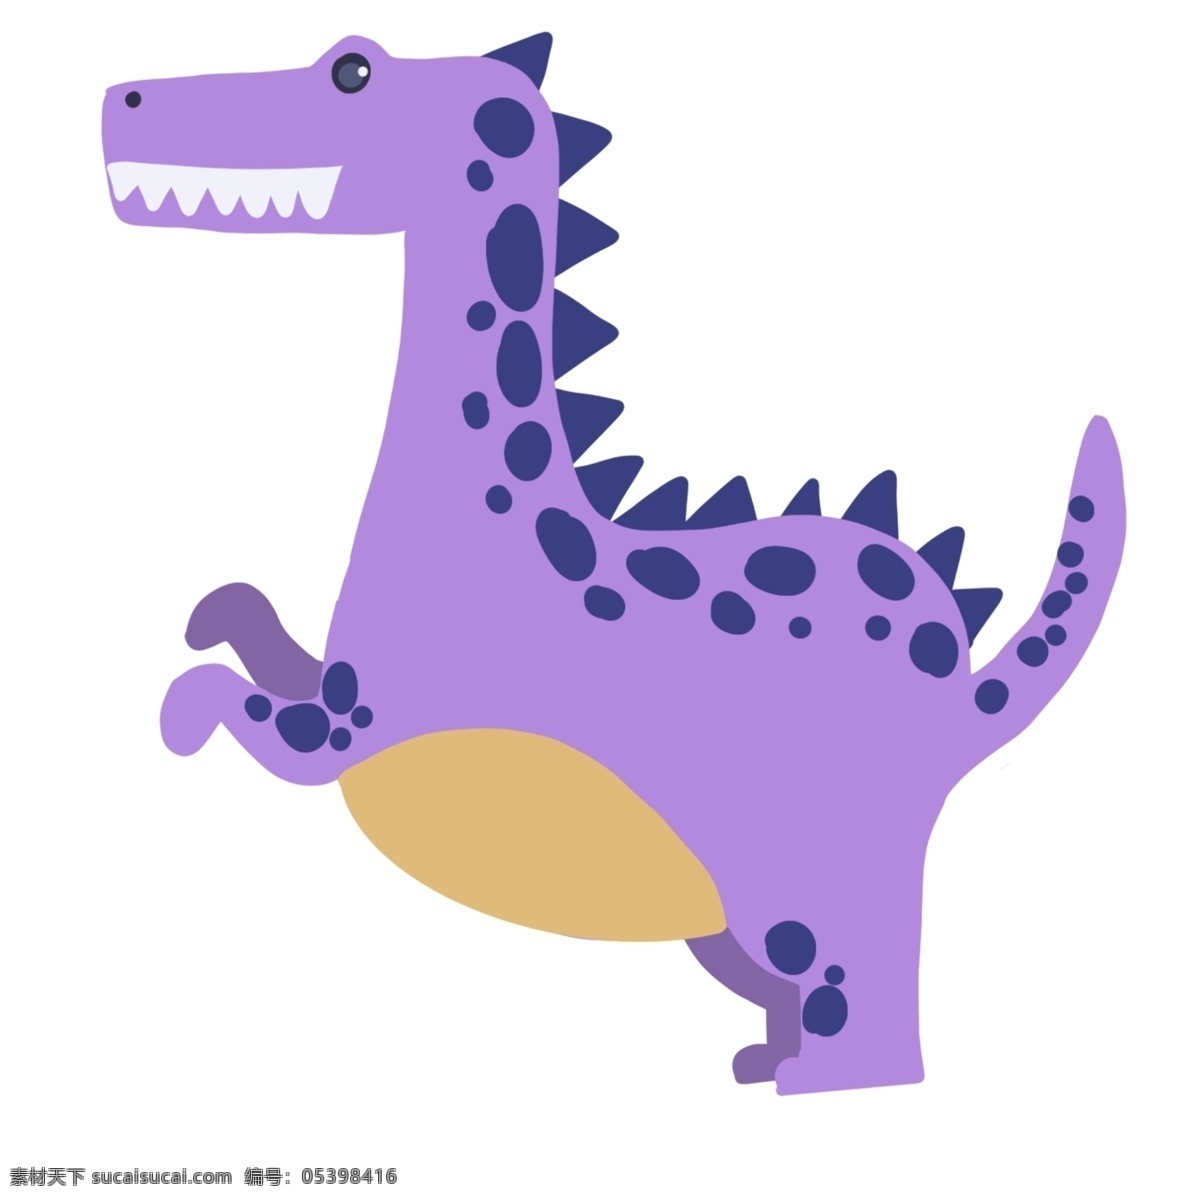 尖 齿 利爪 紫色 棘 背 龙 恐龙 紫色的棘背龙 斑点恐龙 奔跑的棘背龙 骨架 侏罗纪 长脖子恐龙